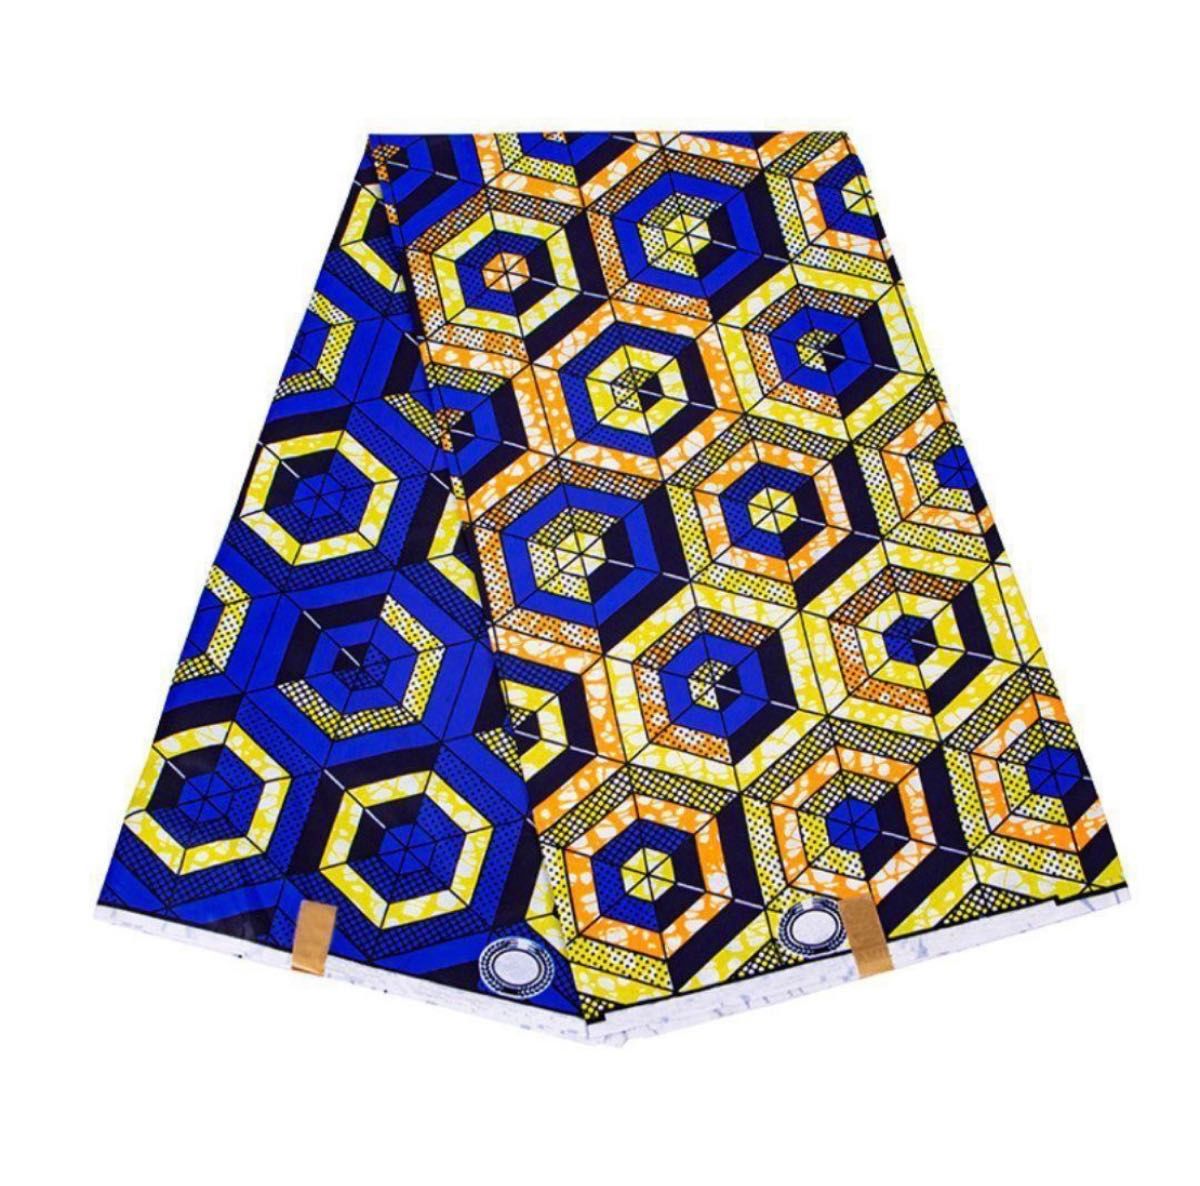 アフリカ布 アフリカンプリント生地 ターバン 生地 手芸 ハンドメイド エスニック 輸入品 衣装 青 黄色 六角形